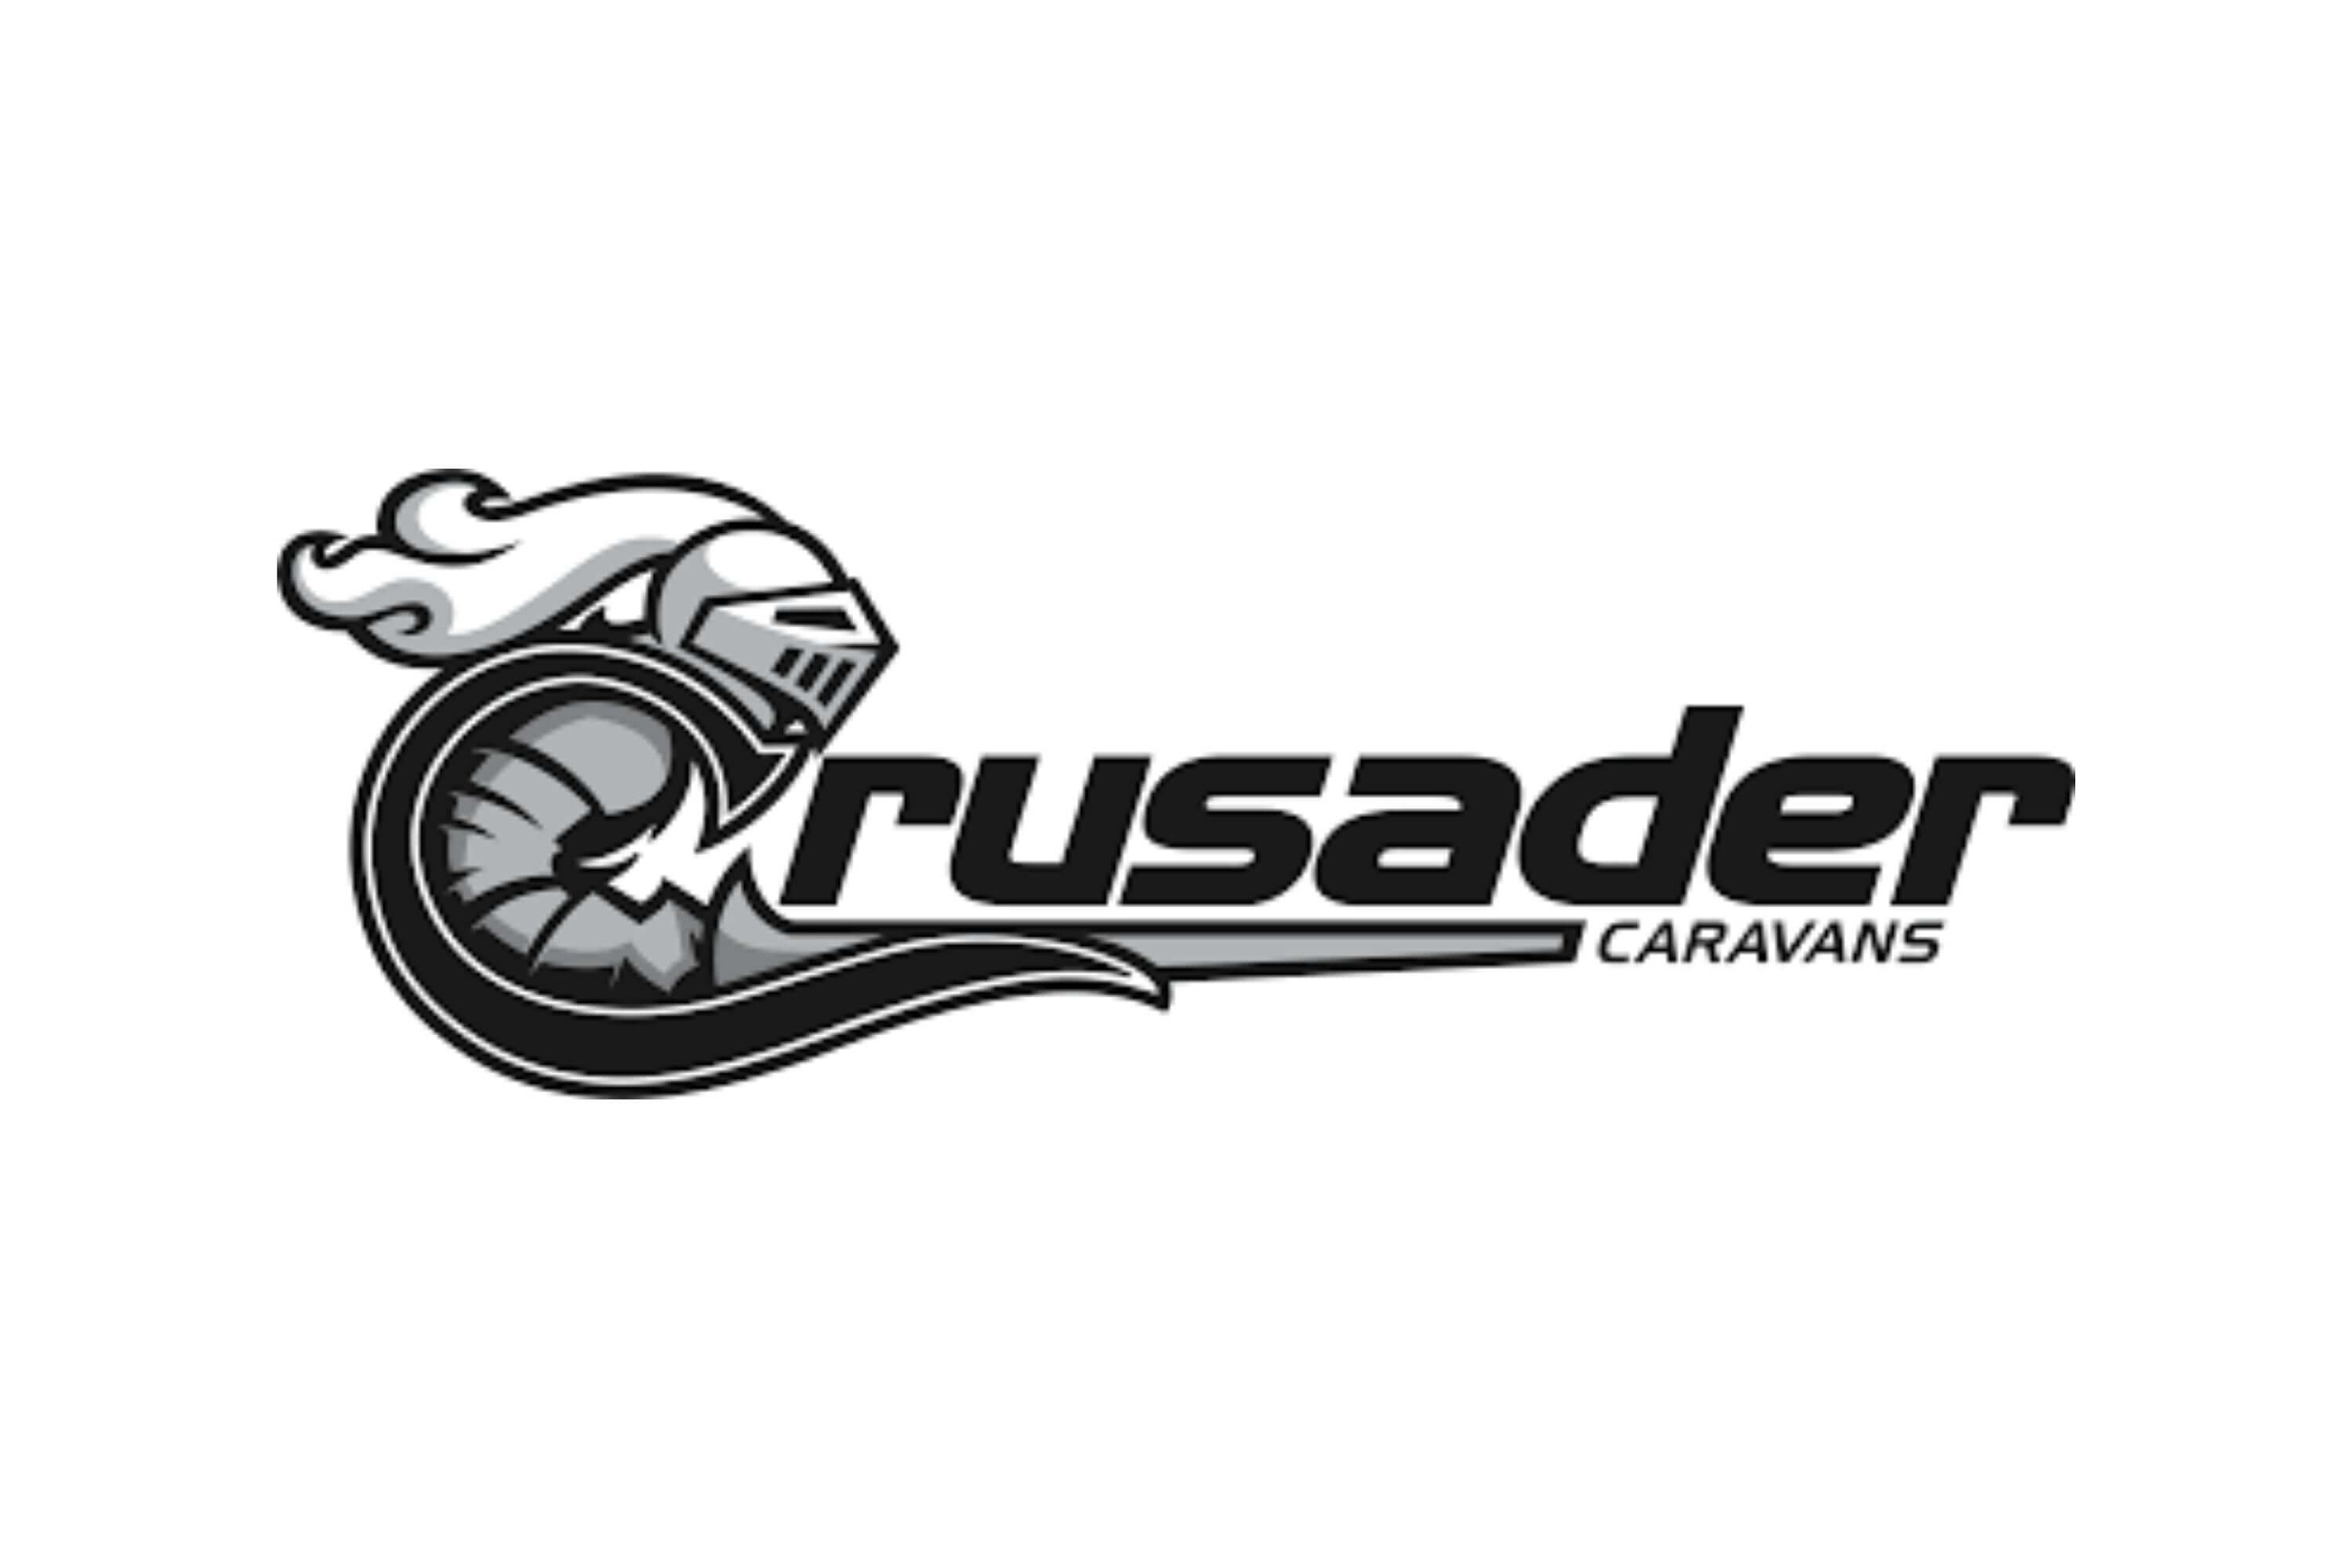 crusader caravans logo